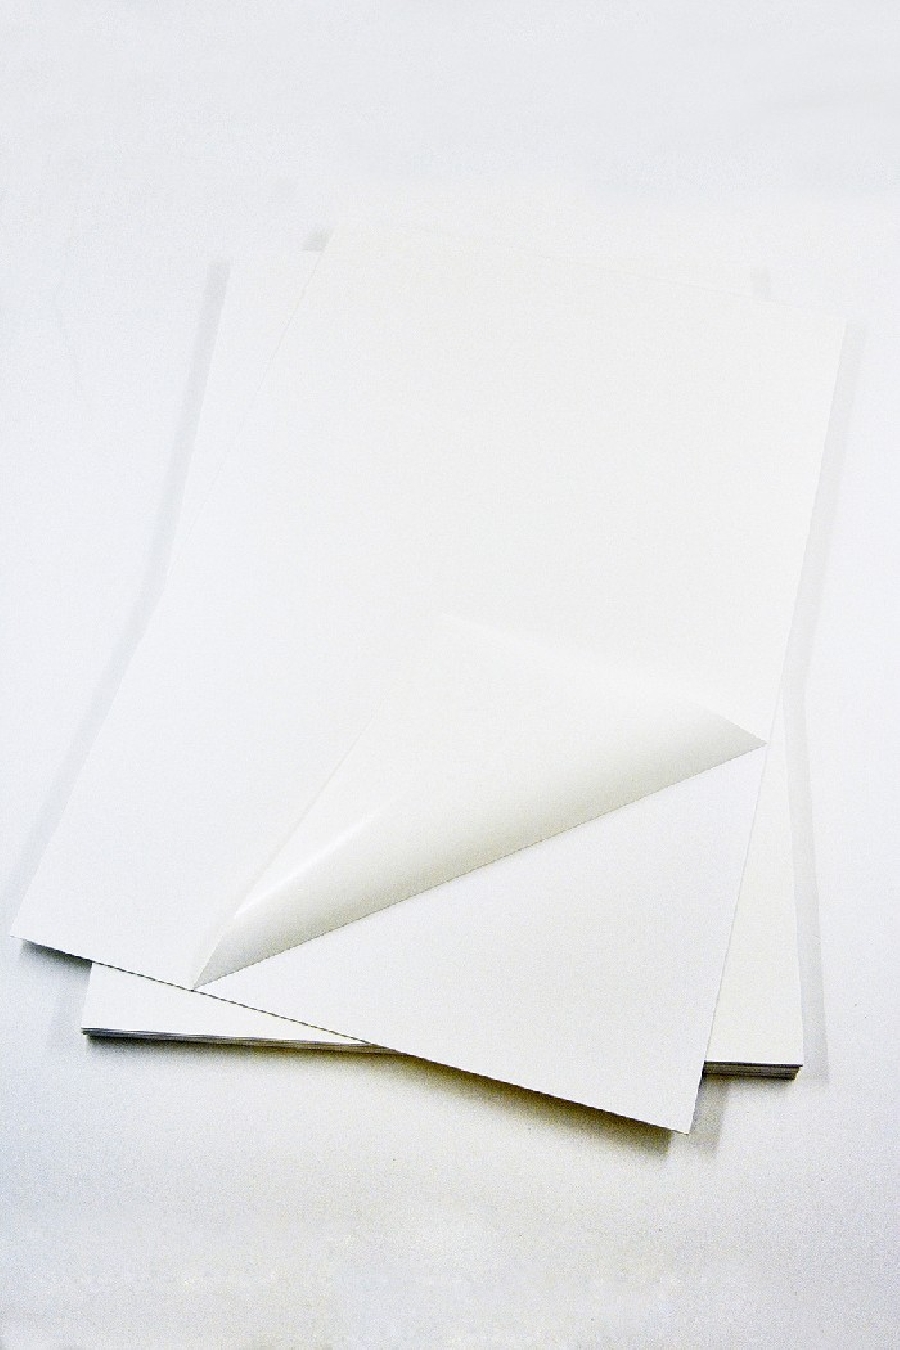 Пластик самоклеящийся двухсторонний (ПВХ лист) 0,5 мм 21x31см белый